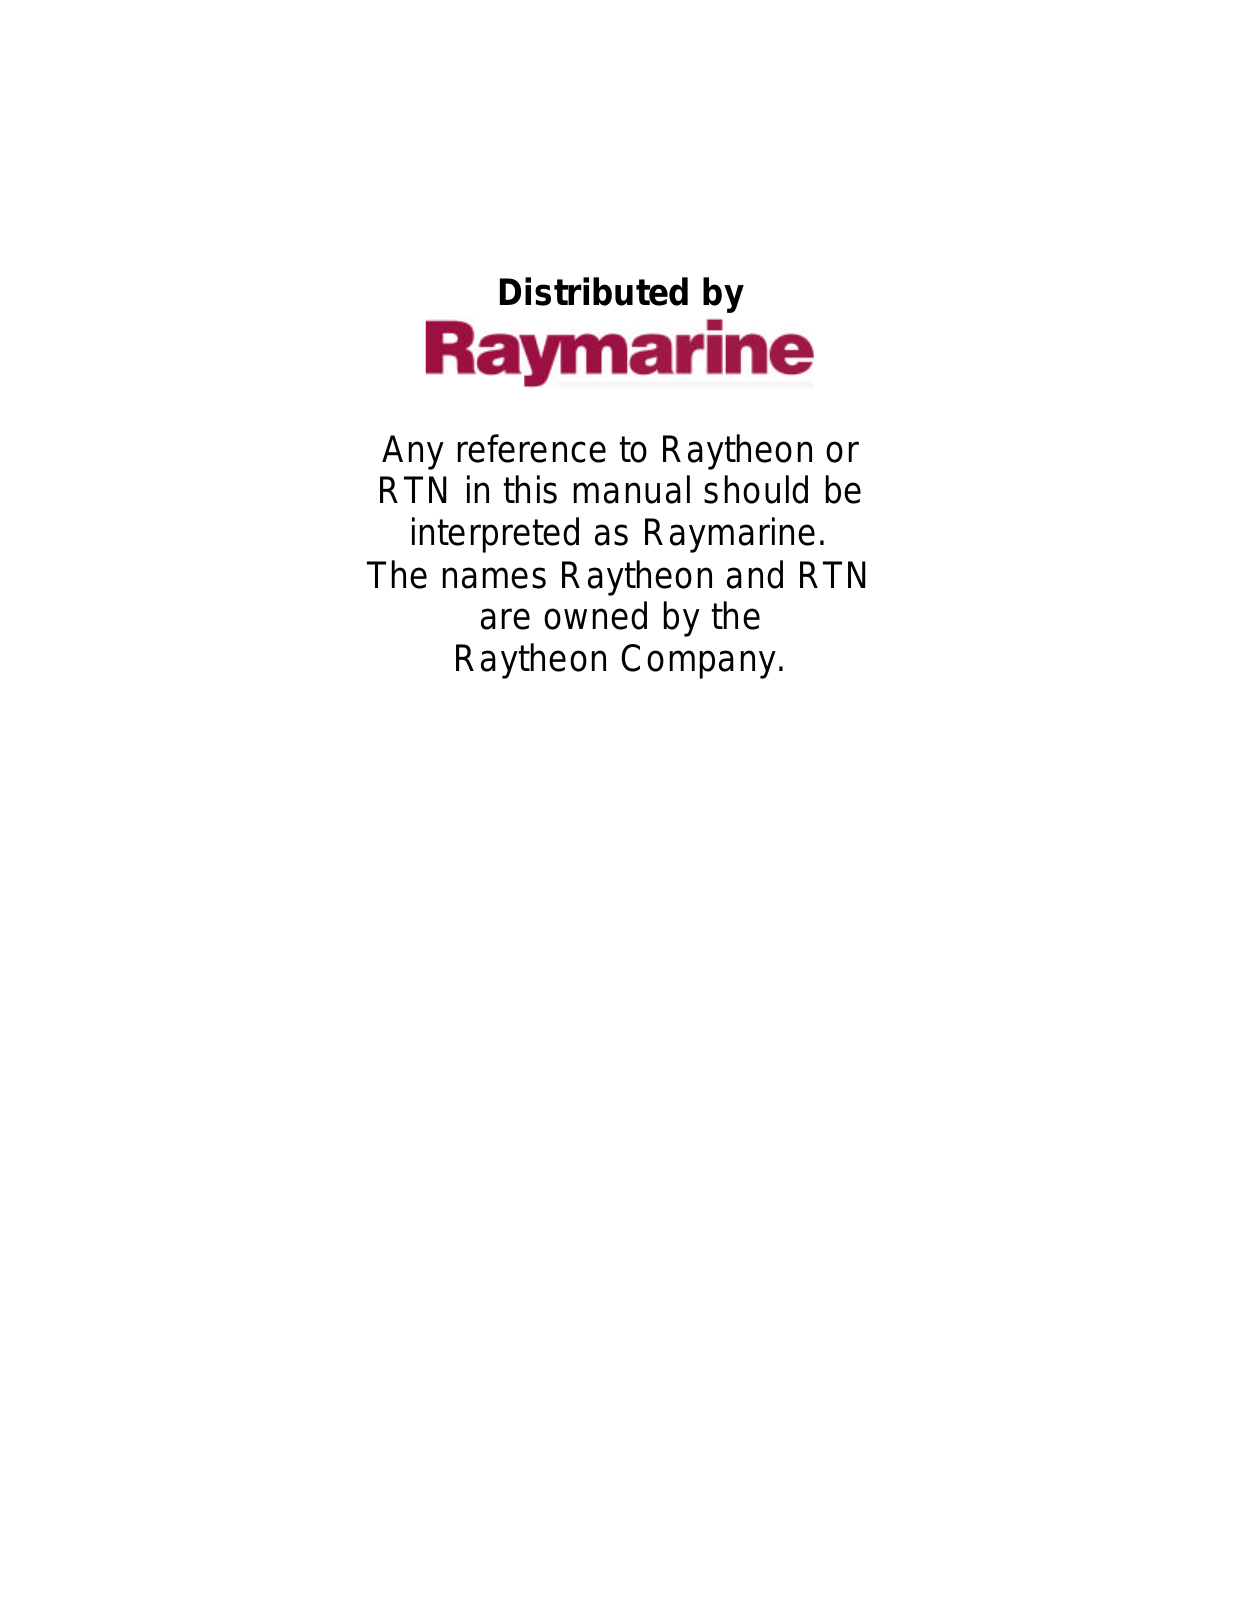 Raymarine RAY 100 HANDHELD VHF Manual